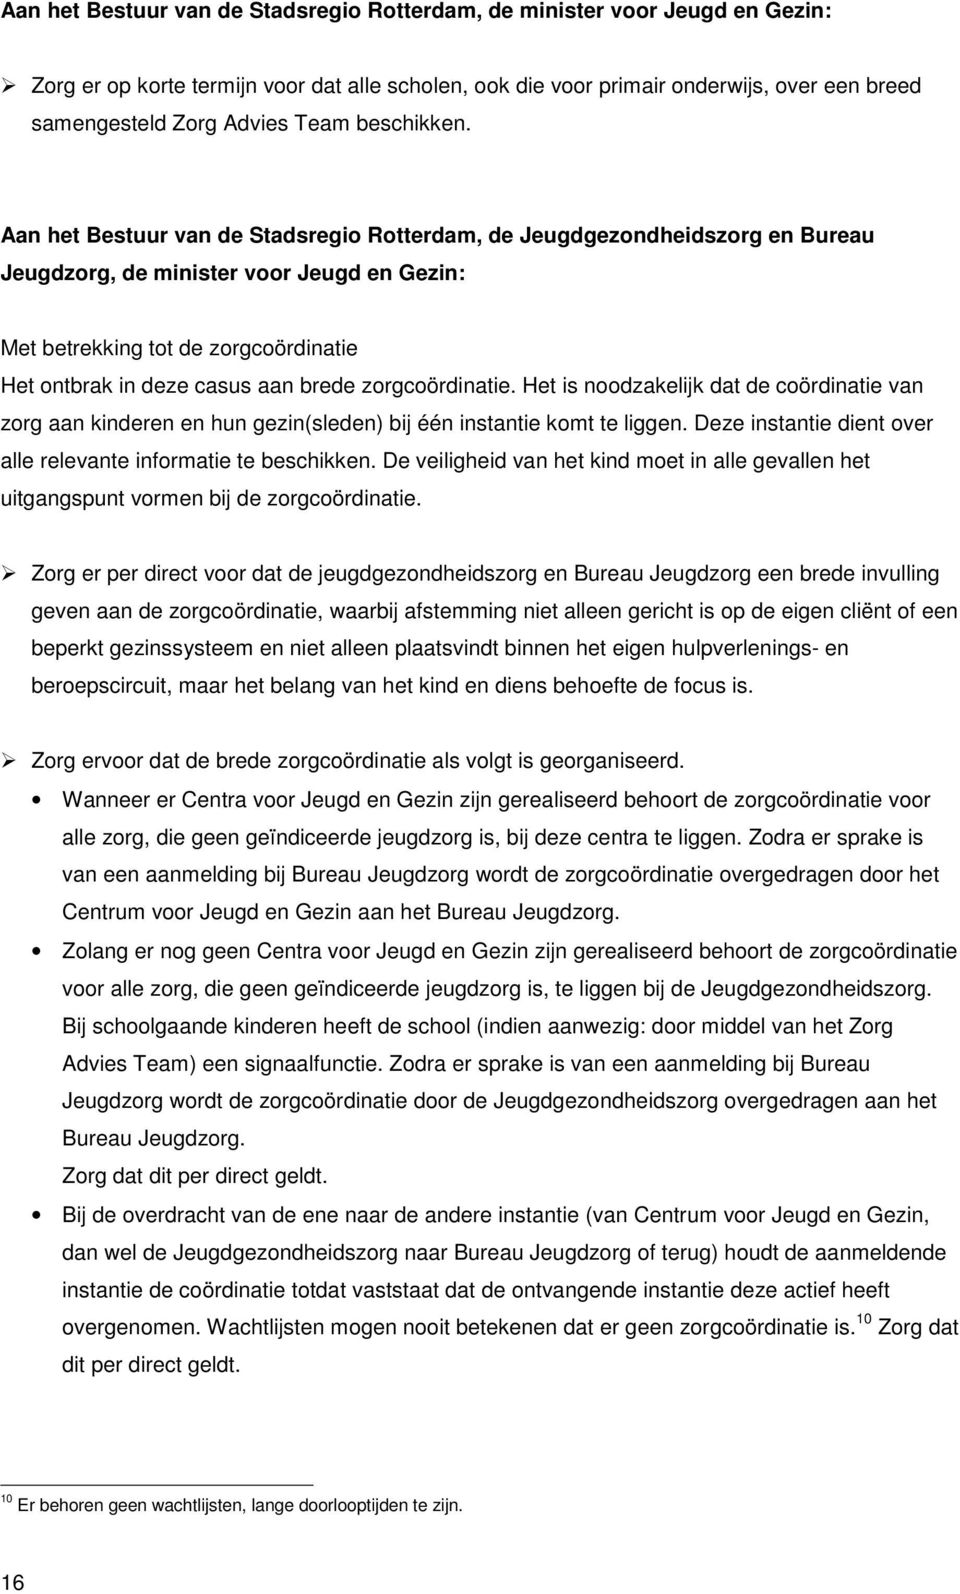 Aan het Bestuur van de Stadsregio Rotterdam, de Jeugdgezondheidszorg en Bureau Jeugdzorg, de minister voor Jeugd en Gezin: Met betrekking tot de zorgcoördinatie Het ontbrak in deze casus aan brede